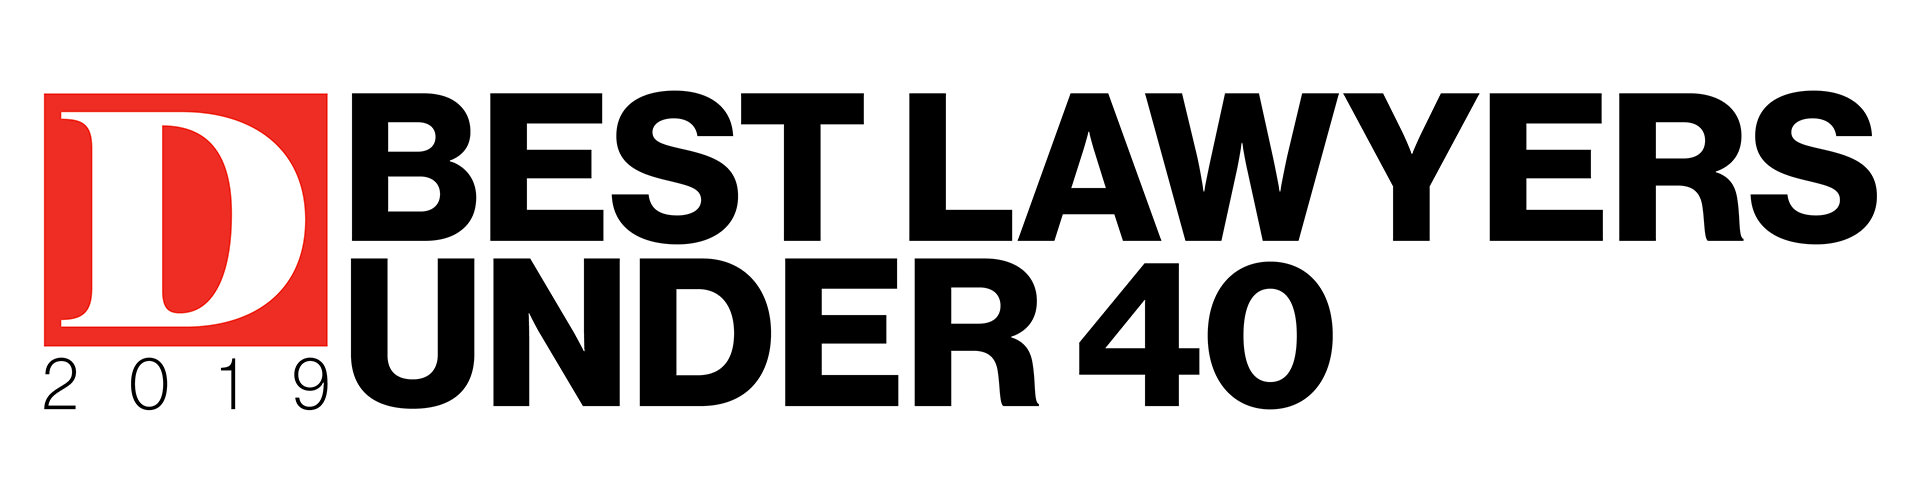 Judge Lindsey Wynne Best Lawyer Under 40